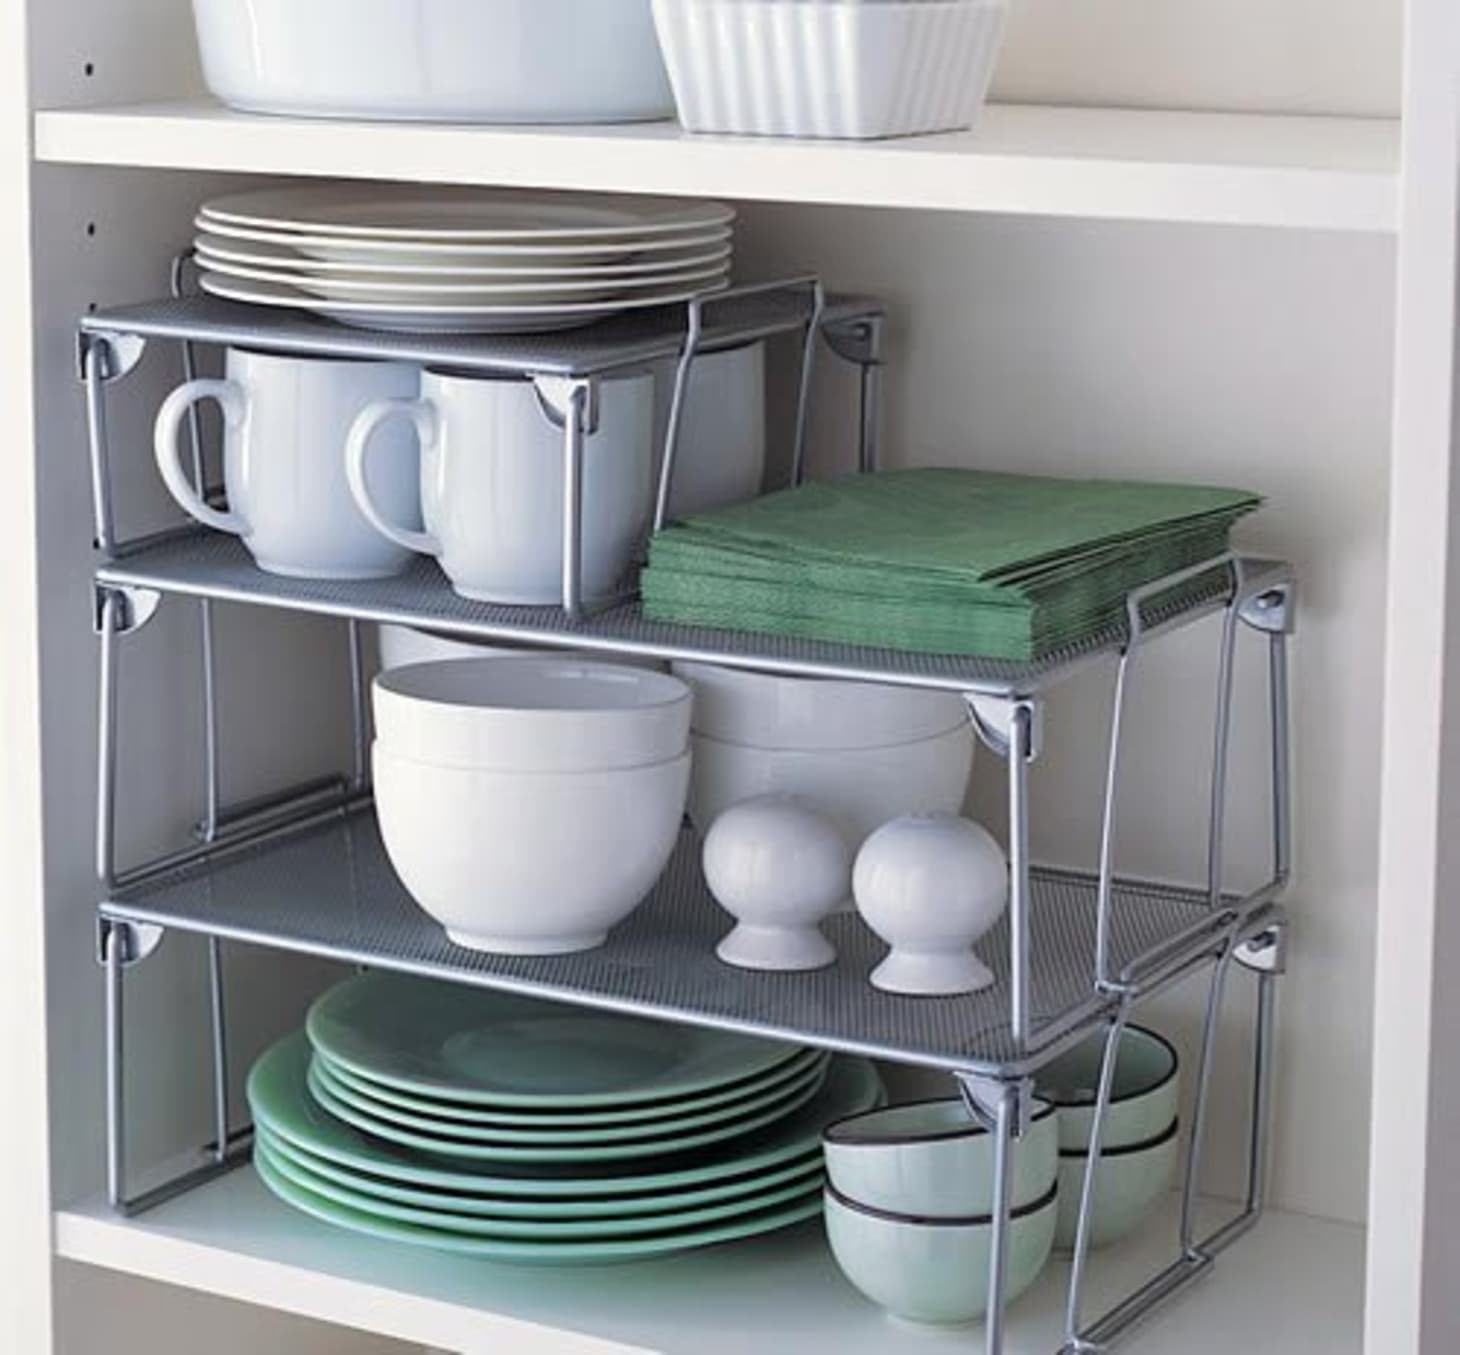 Extra Storage Cabinet For Kitchen
 Small Kitchen Storage & Organization Ideas Clever